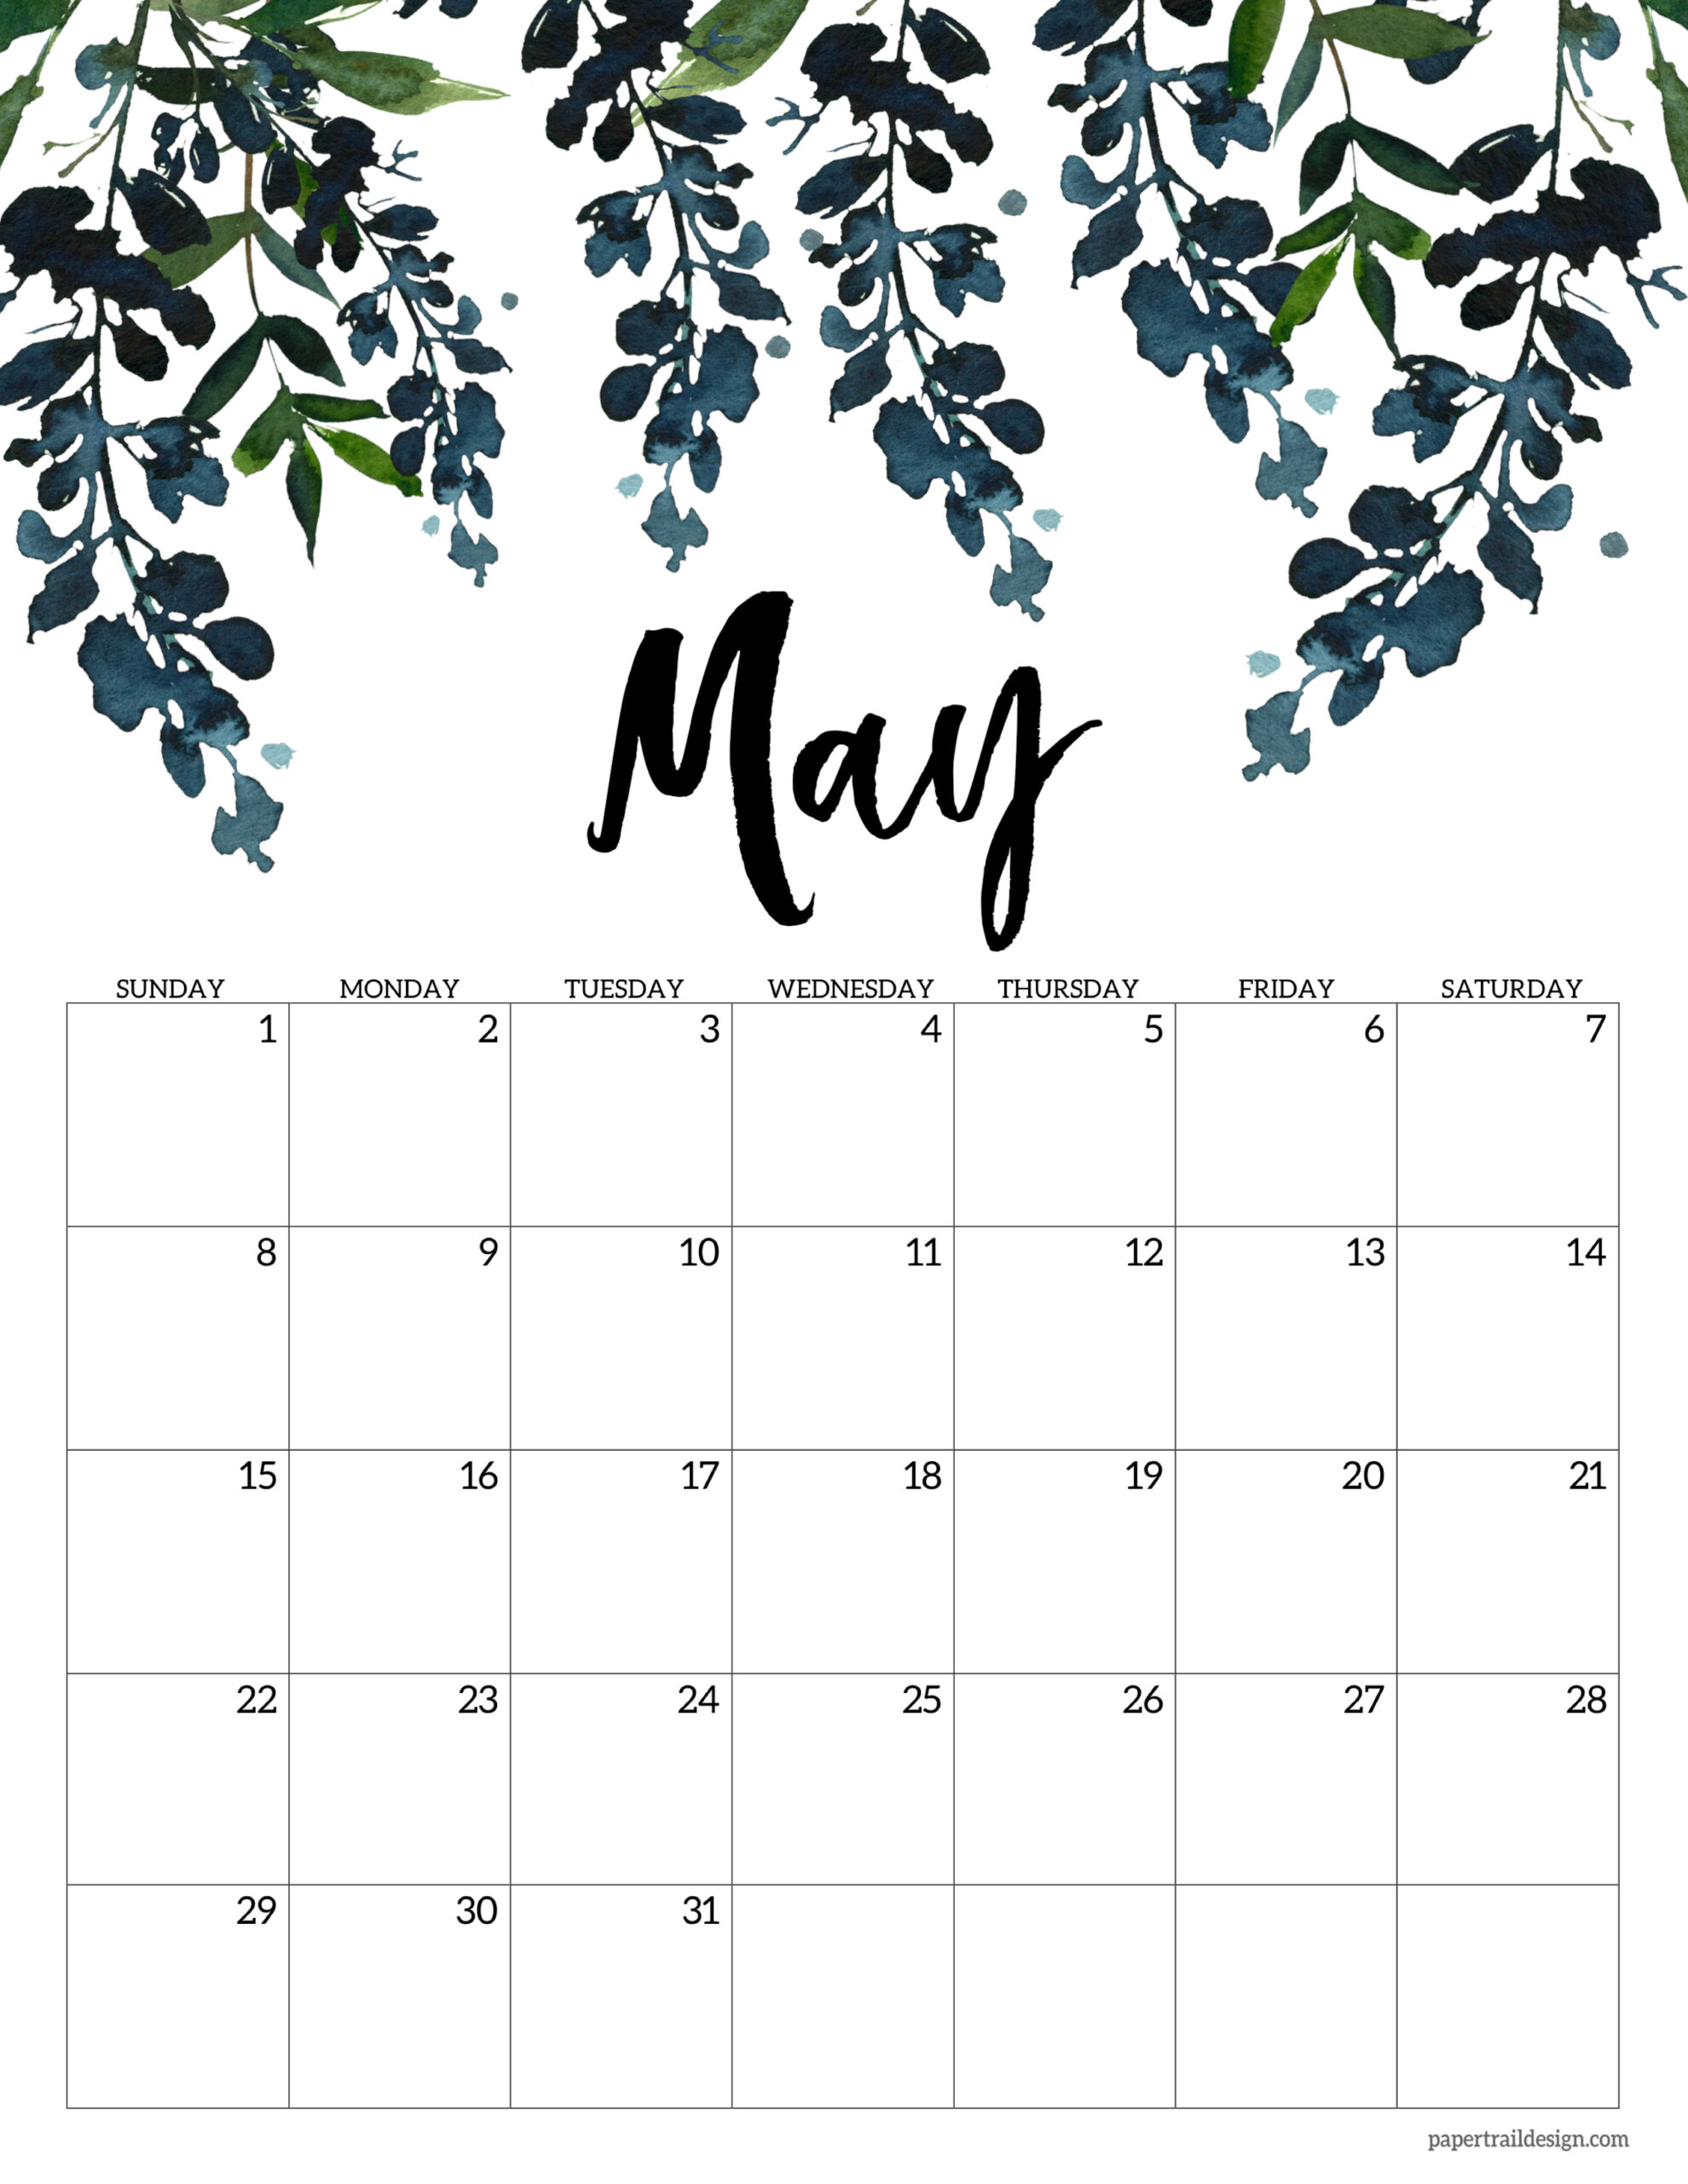 May June Calendar 2022 Free 2022 Calendar Printable - Floral - Paper Trail Design